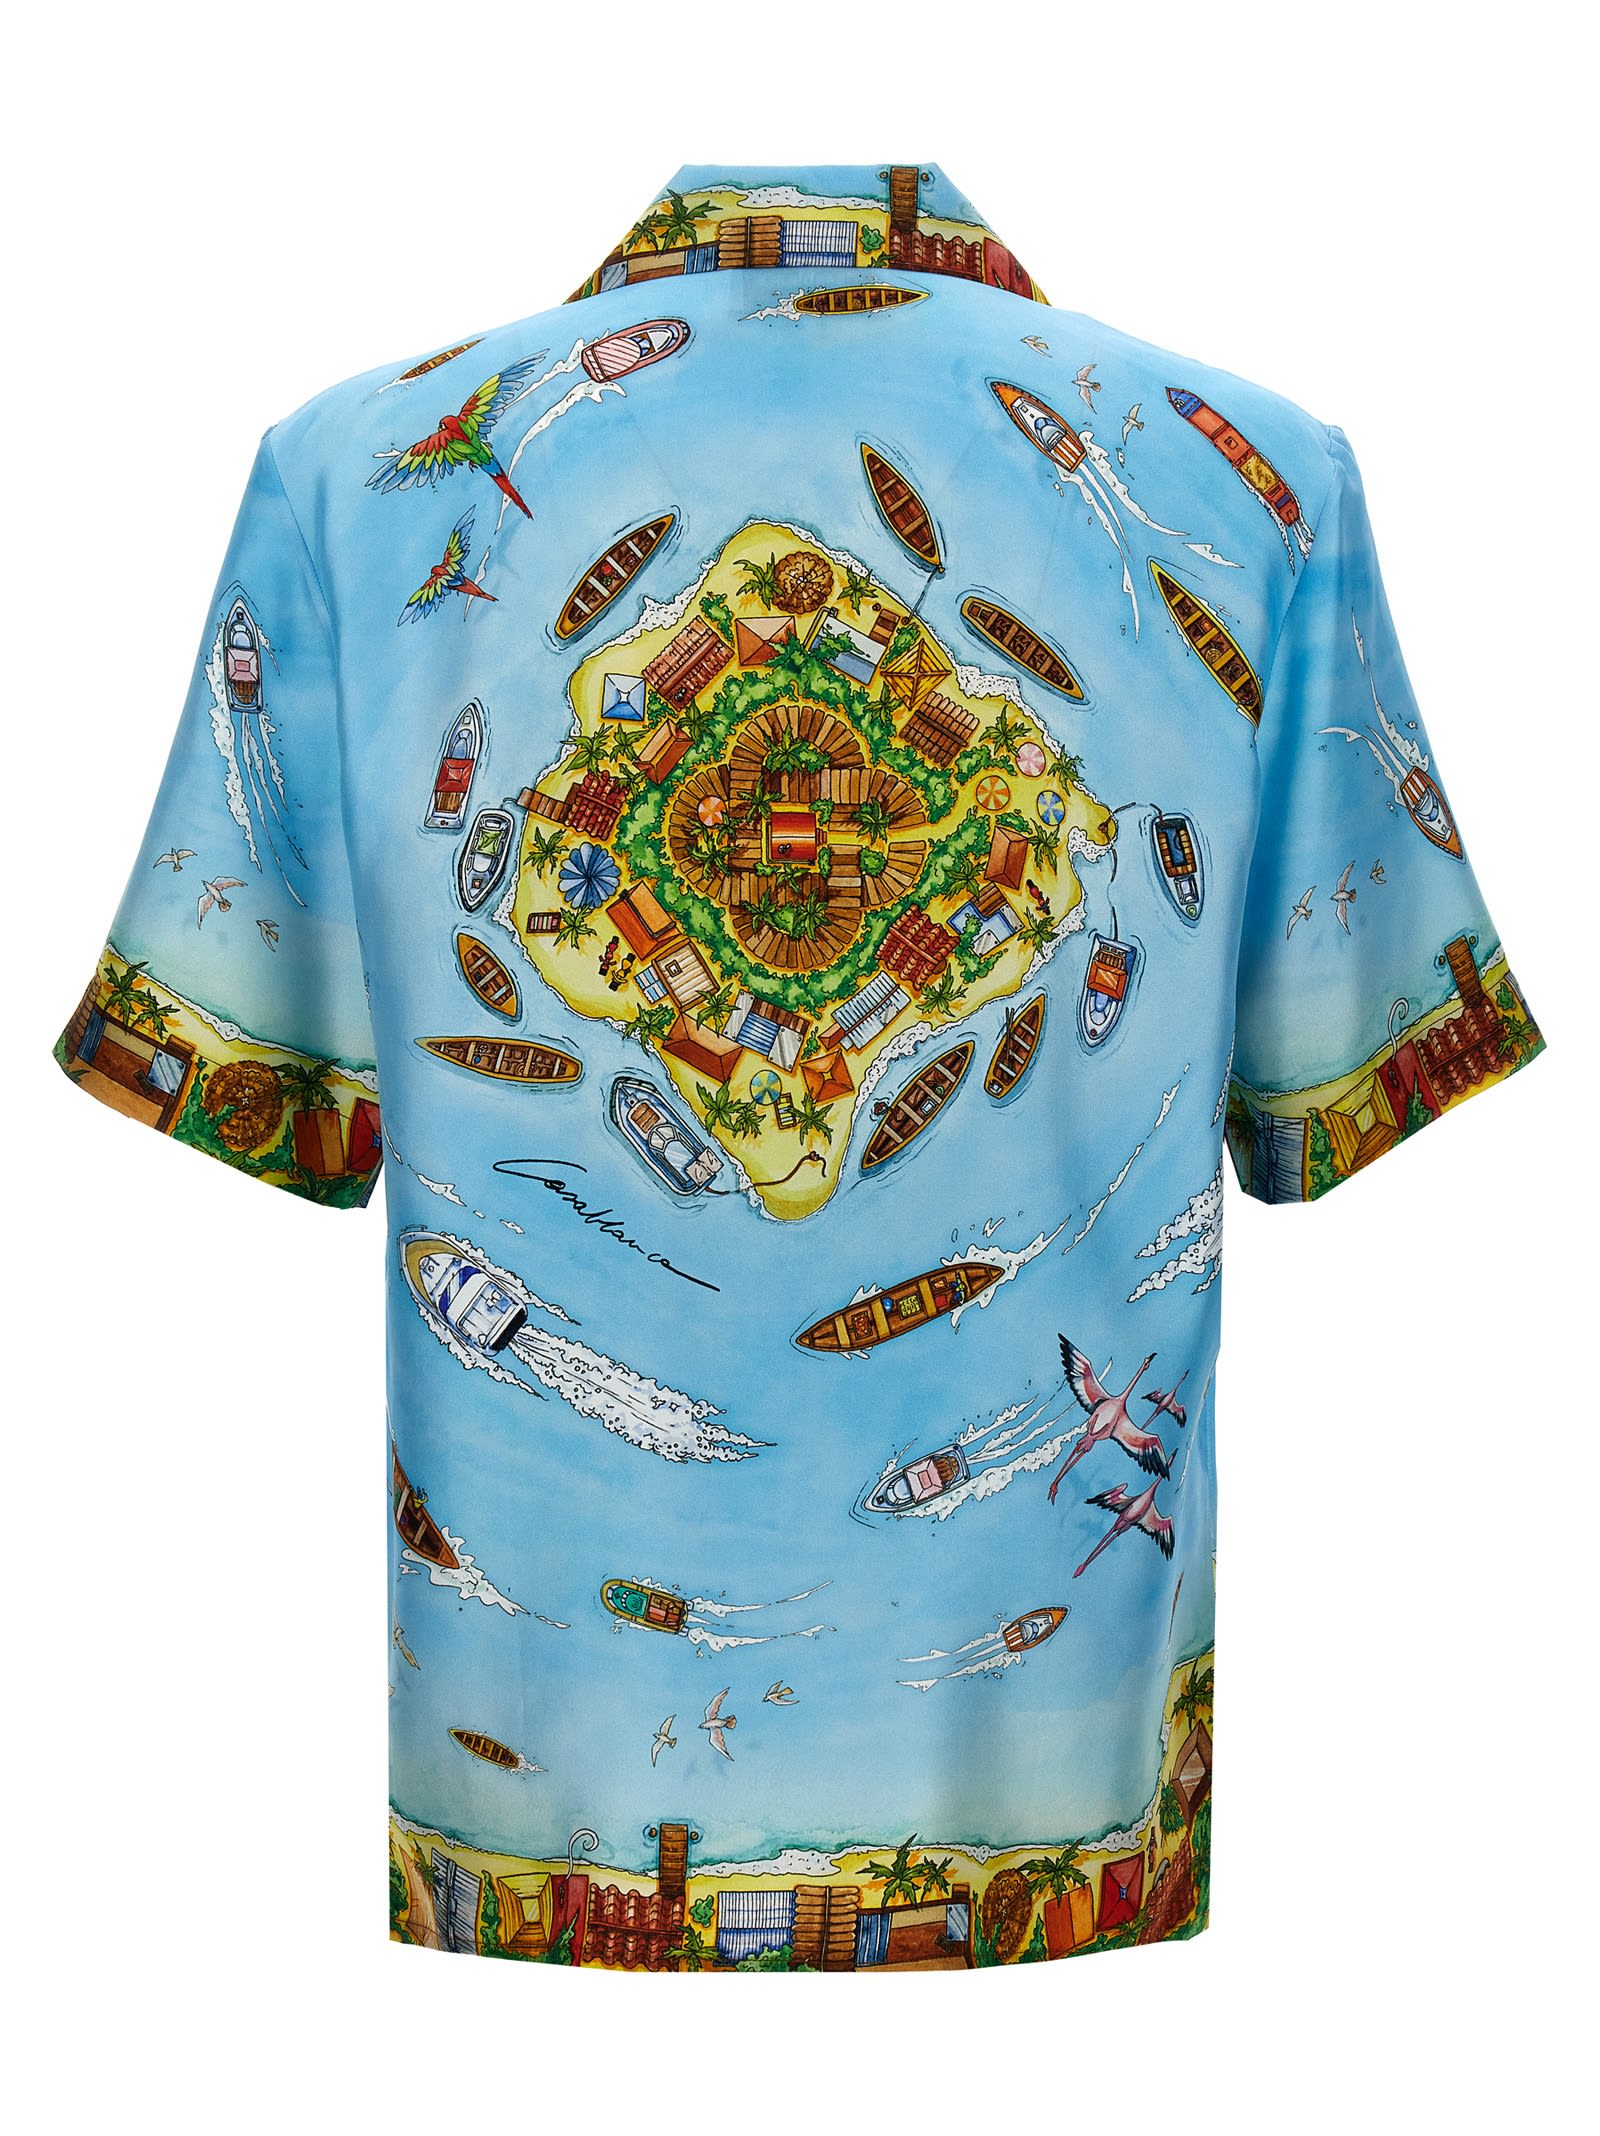 Shop Casablanca Maison Sur Piloti Shirt In Multicolor